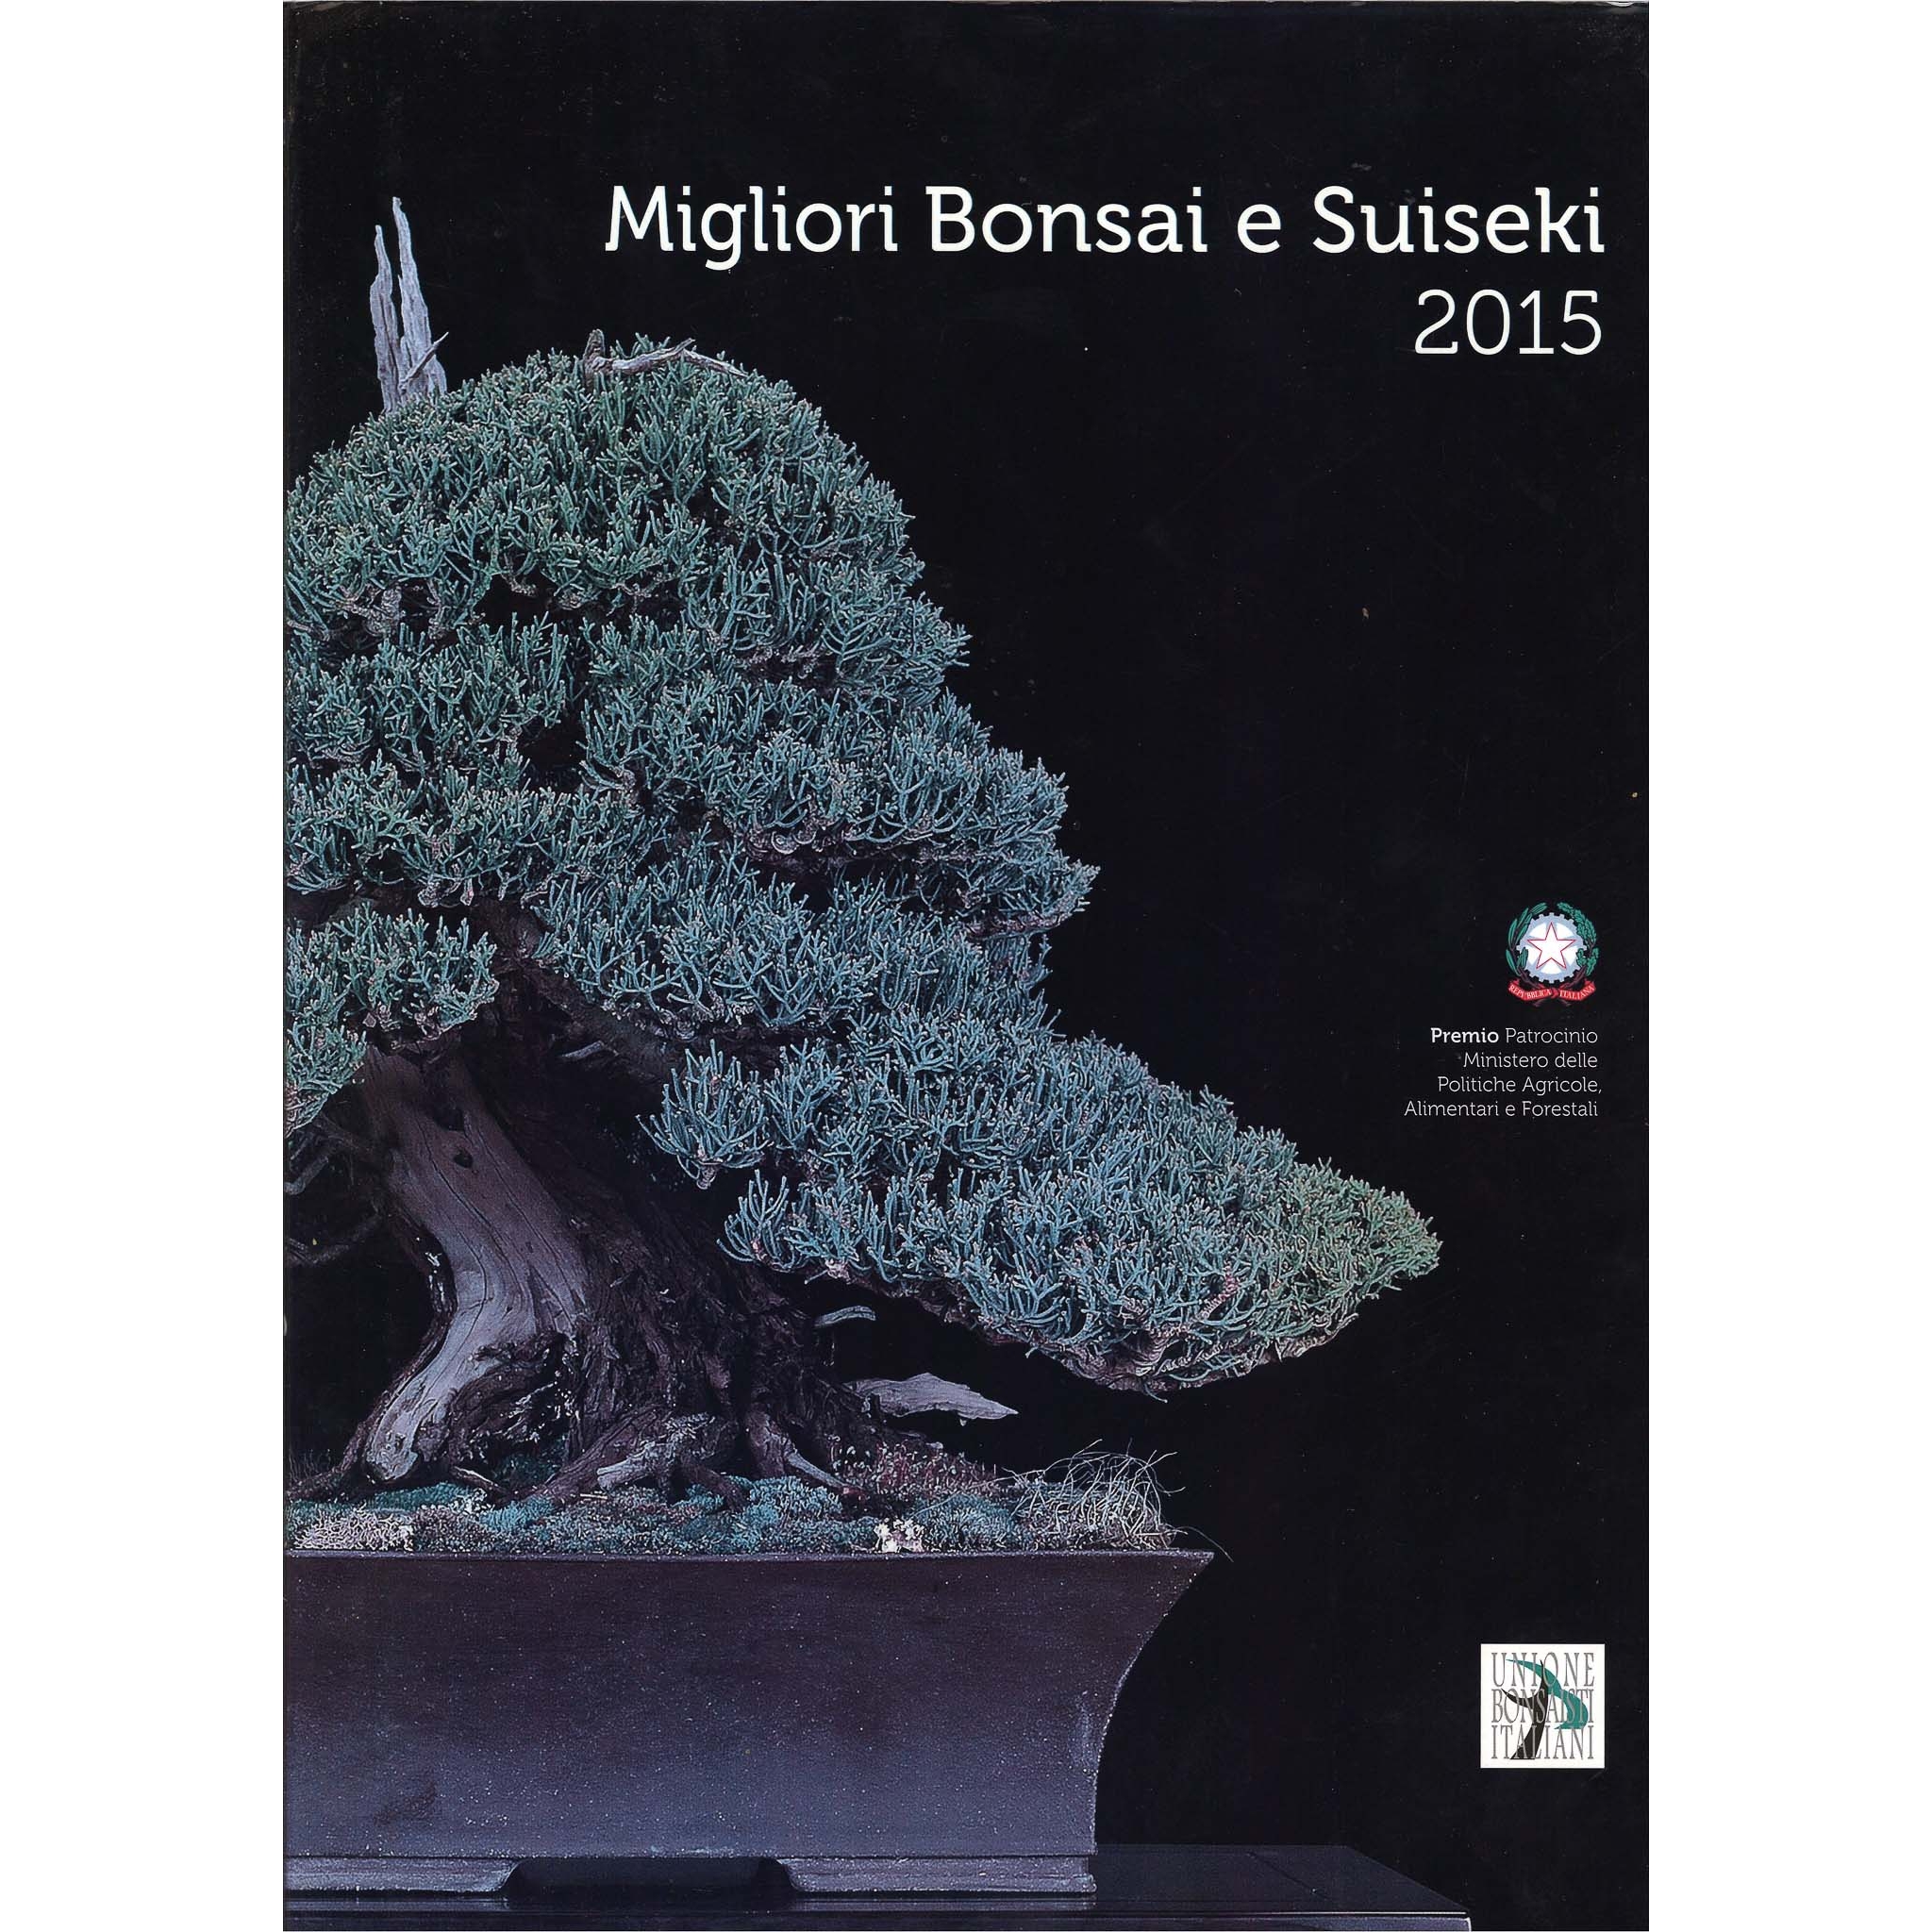 Migliori Bonsai e Suiseki 2015